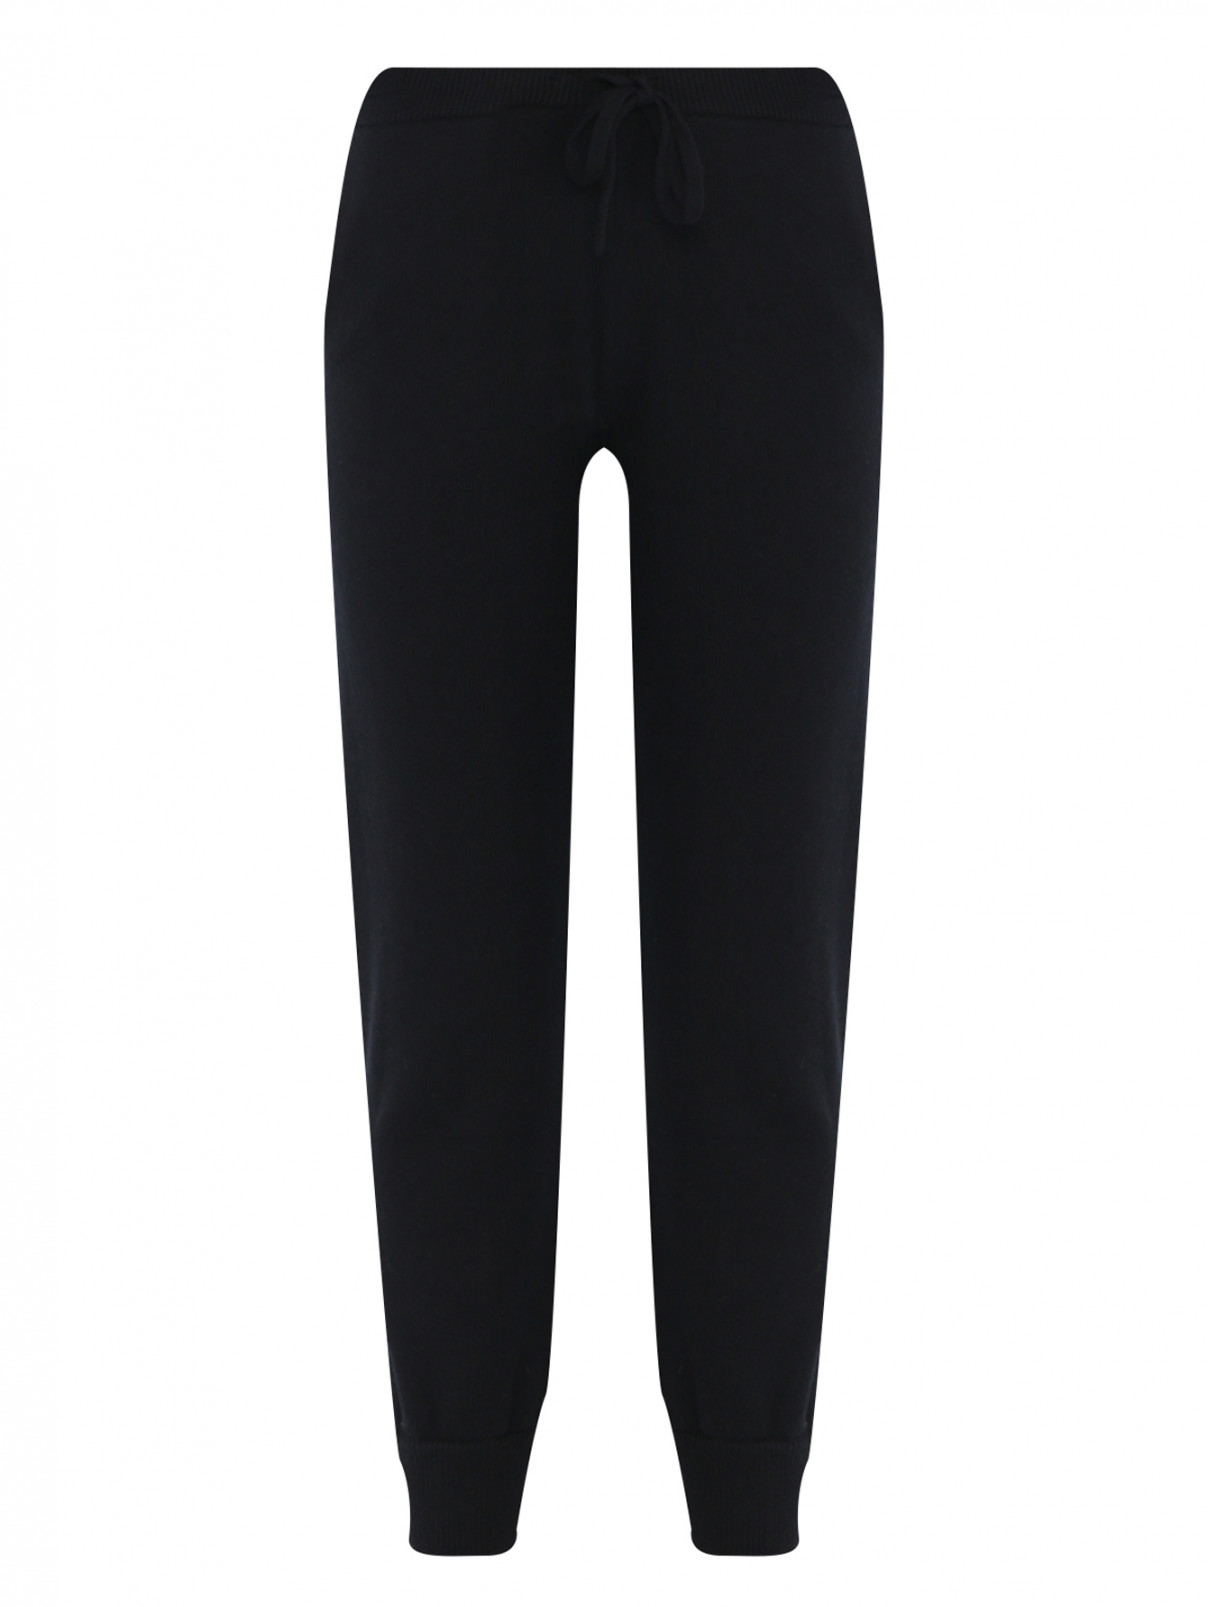 Трикотажные брюки на резинке Dorothee Schumacher  –  Общий вид  – Цвет:  Черный